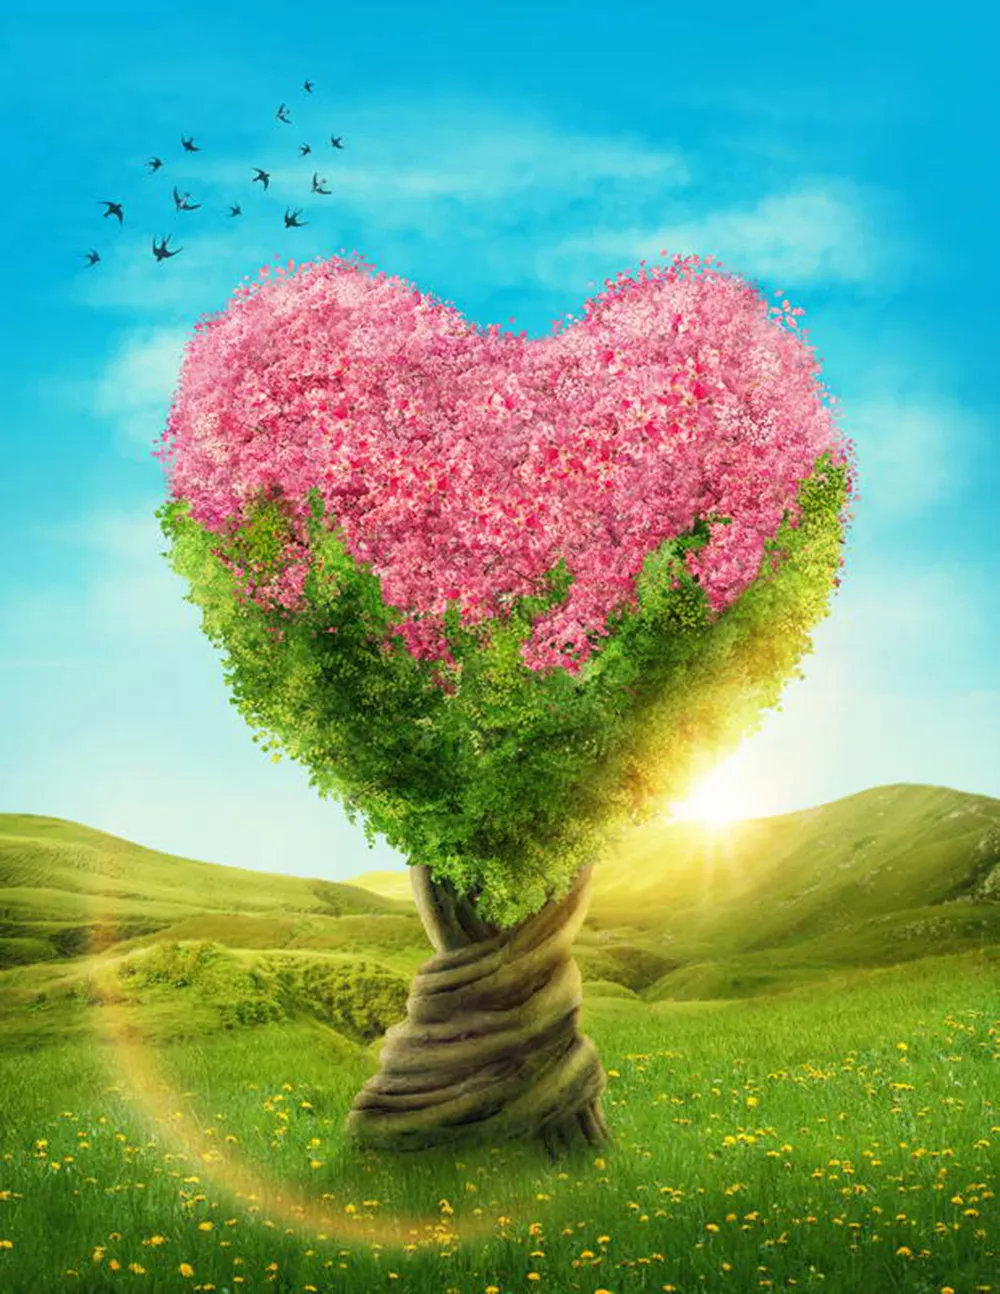 Décors d'arbres en forme de coeur avec des fleurs roses soleil bleu ciel vert prairie beau paysage de printemps fond de mariage romantique en plein air